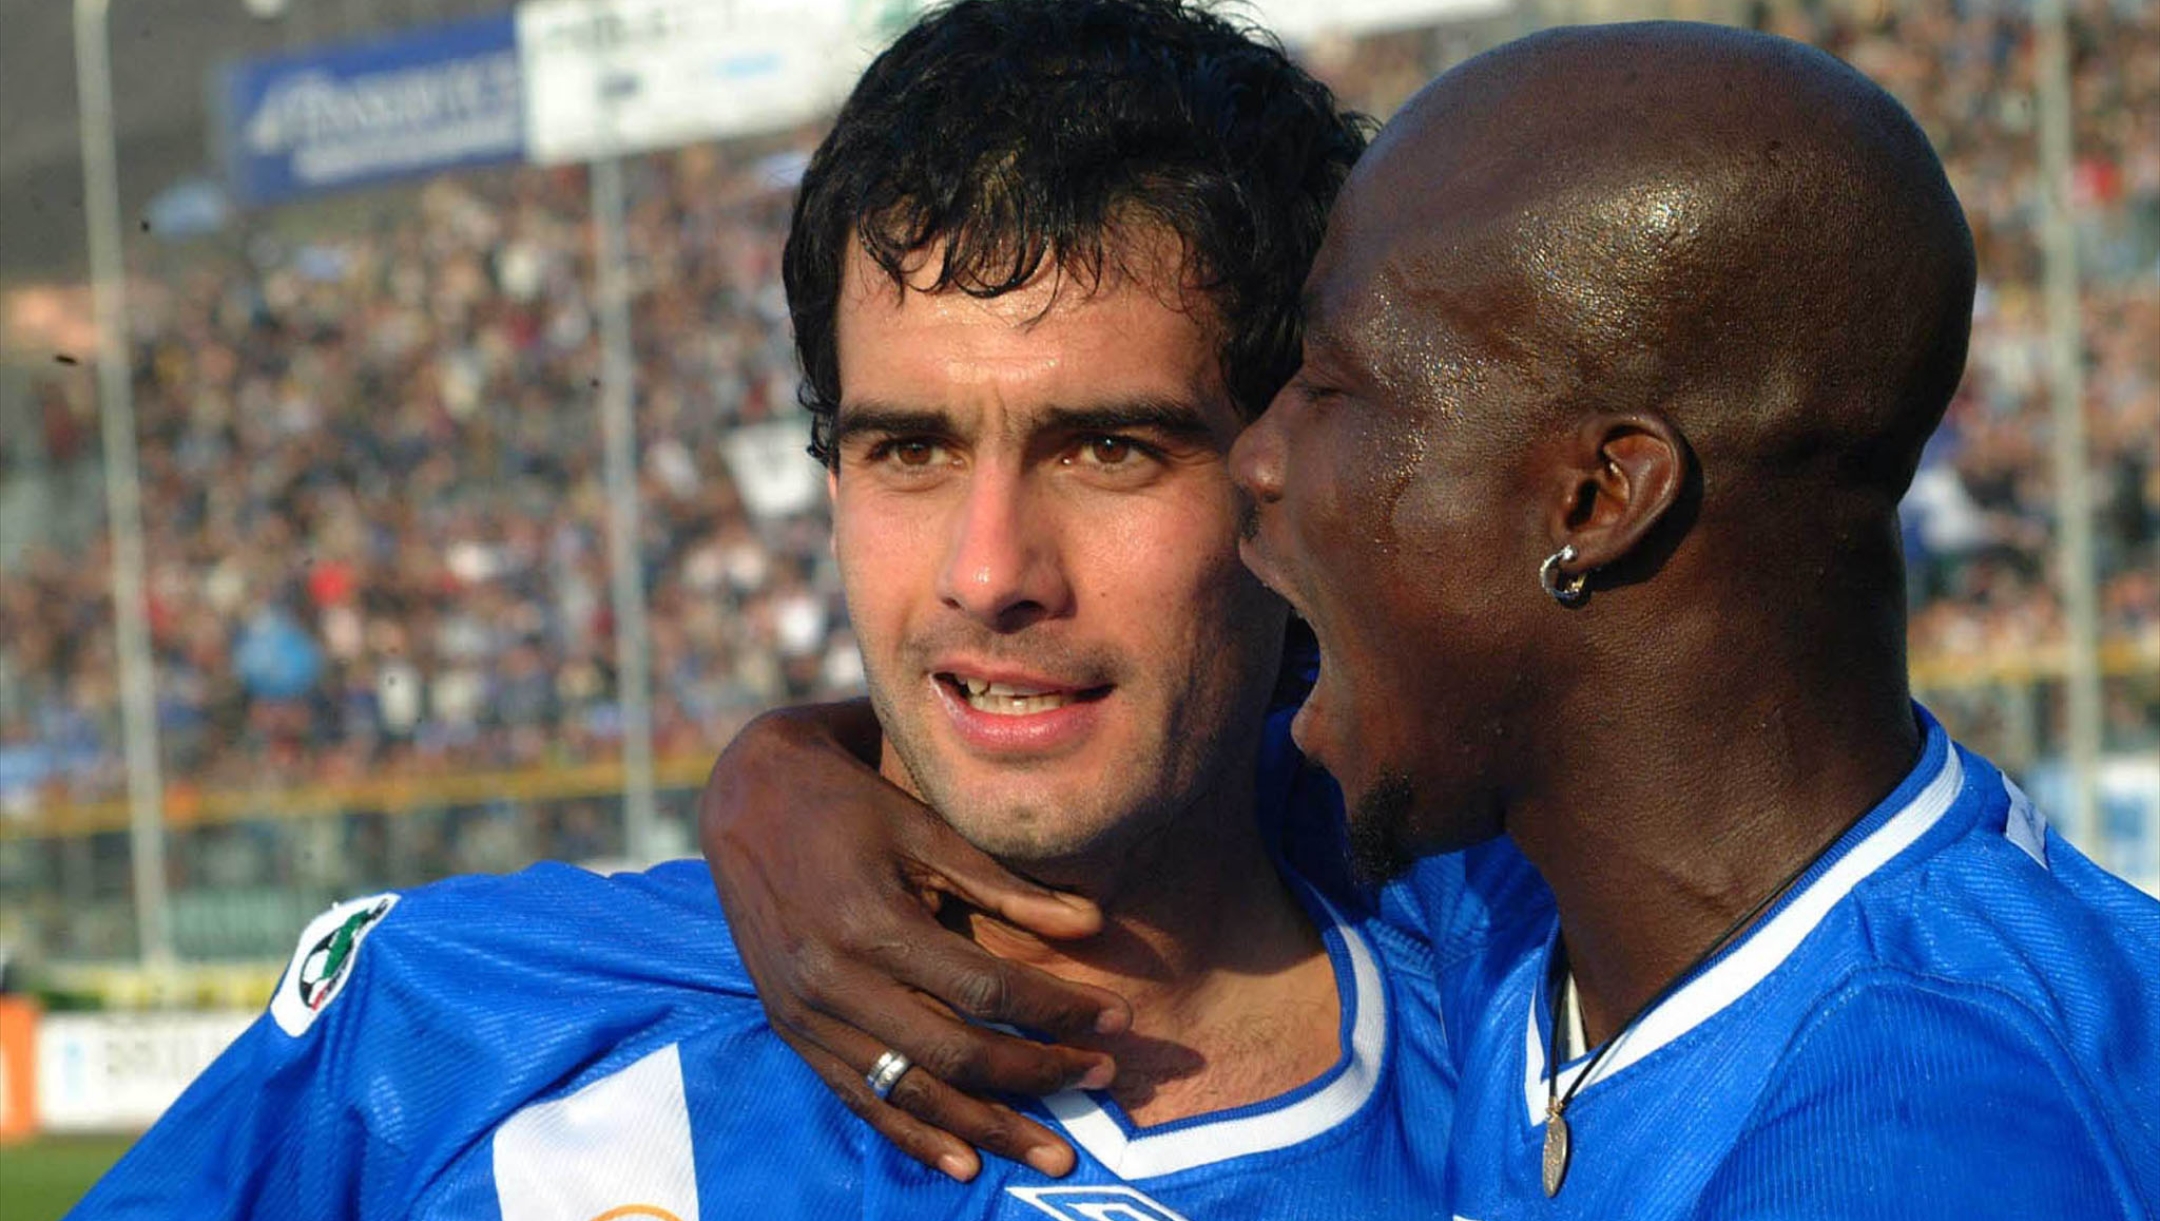 20030316 - BRESCIA - SPR - CALCIO: BRESCIA - TORINO .  Appiah(d) si congratula con Guardiola dopo il suo gol realizzato su rigore . Il Brescia ha battuto il Torino per 1-0.   ANSA - ALABISO - ji